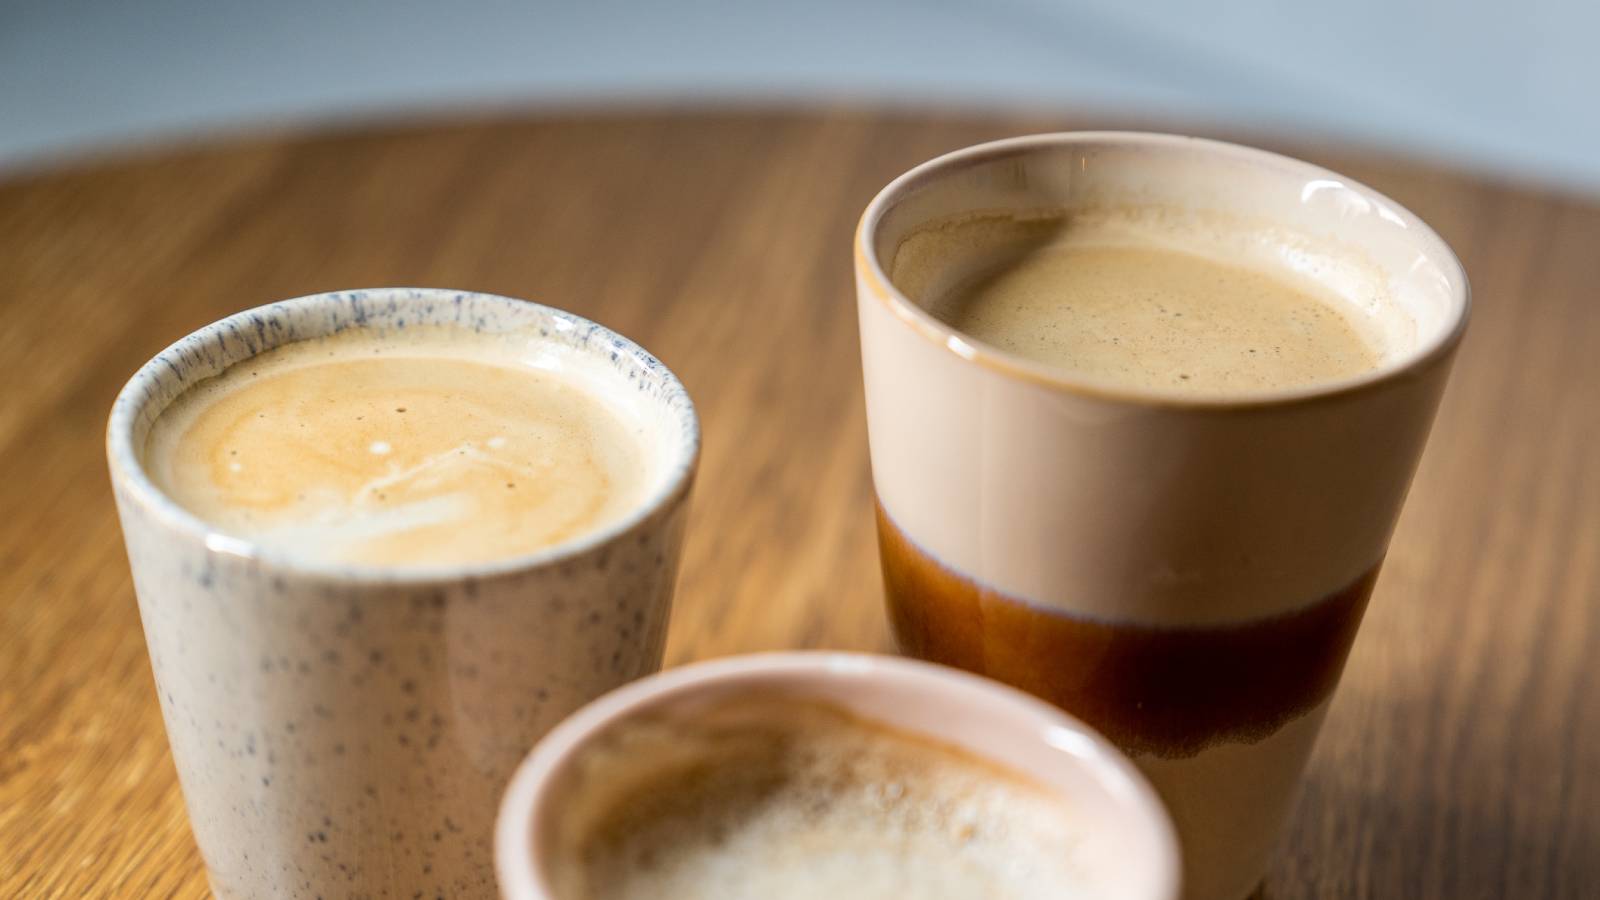 Je bekijkt nu Verschillende koffieschenk soorten: de Cappuccino